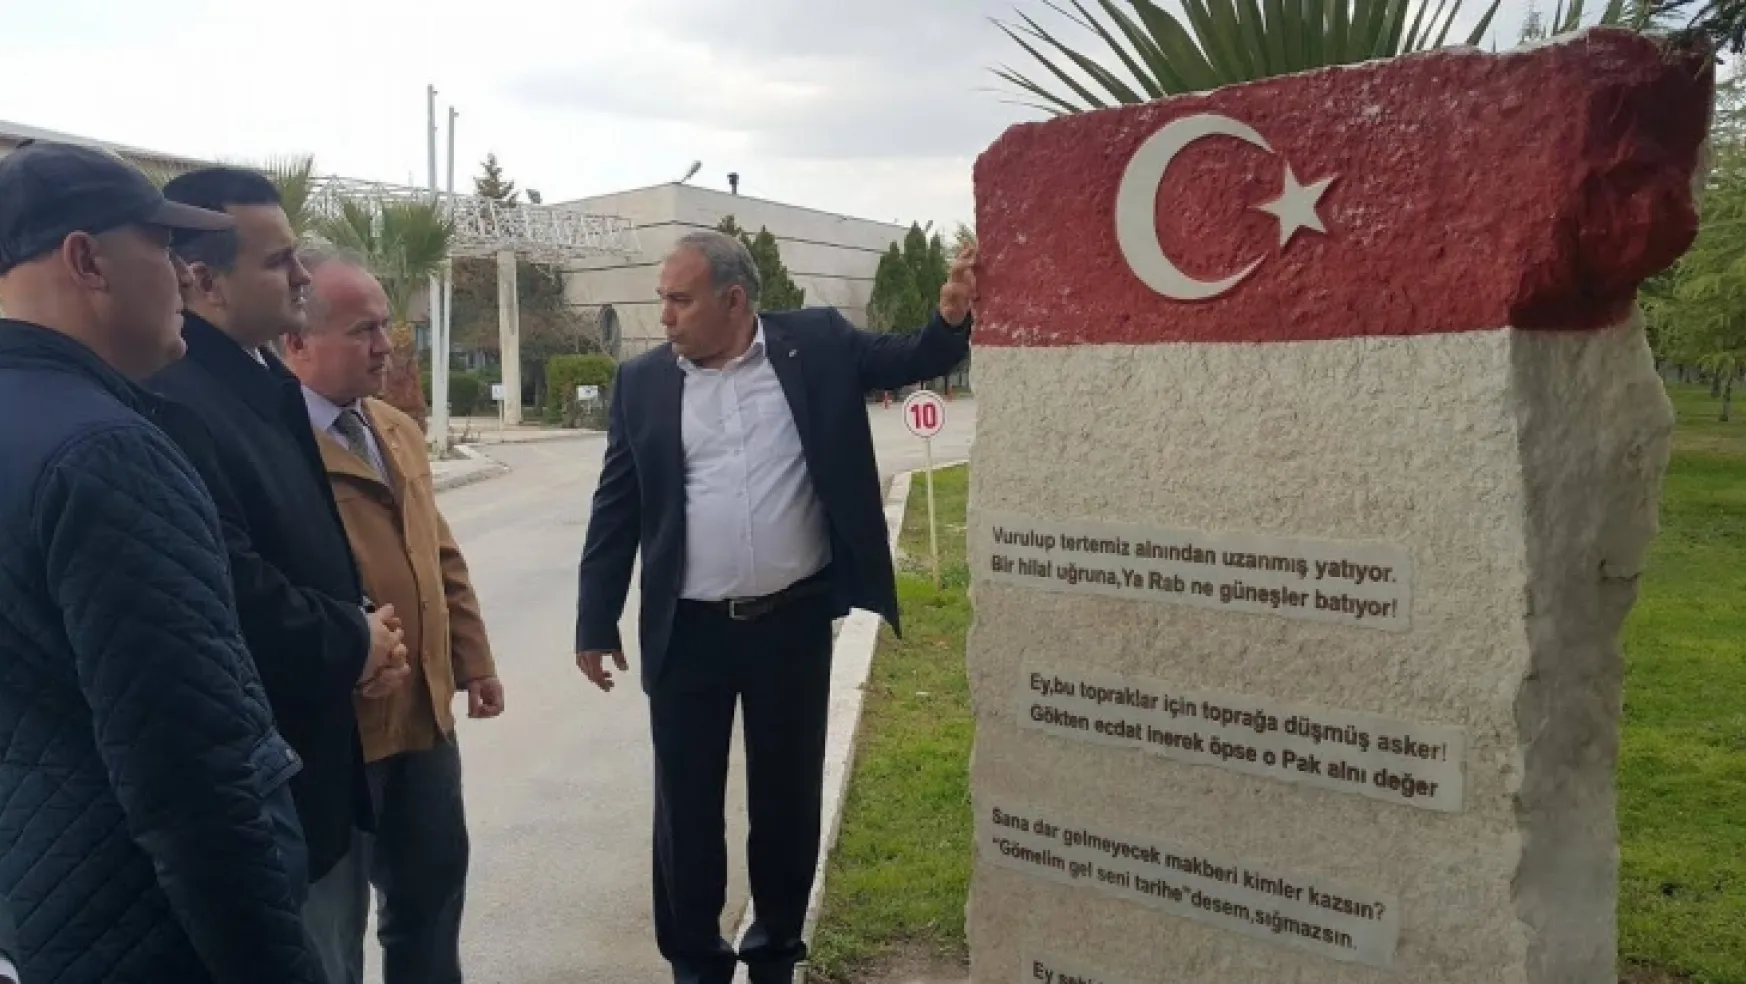 Gaziler ve Gazeteciler Manisa Şehitlik abidesini ziyaret etti